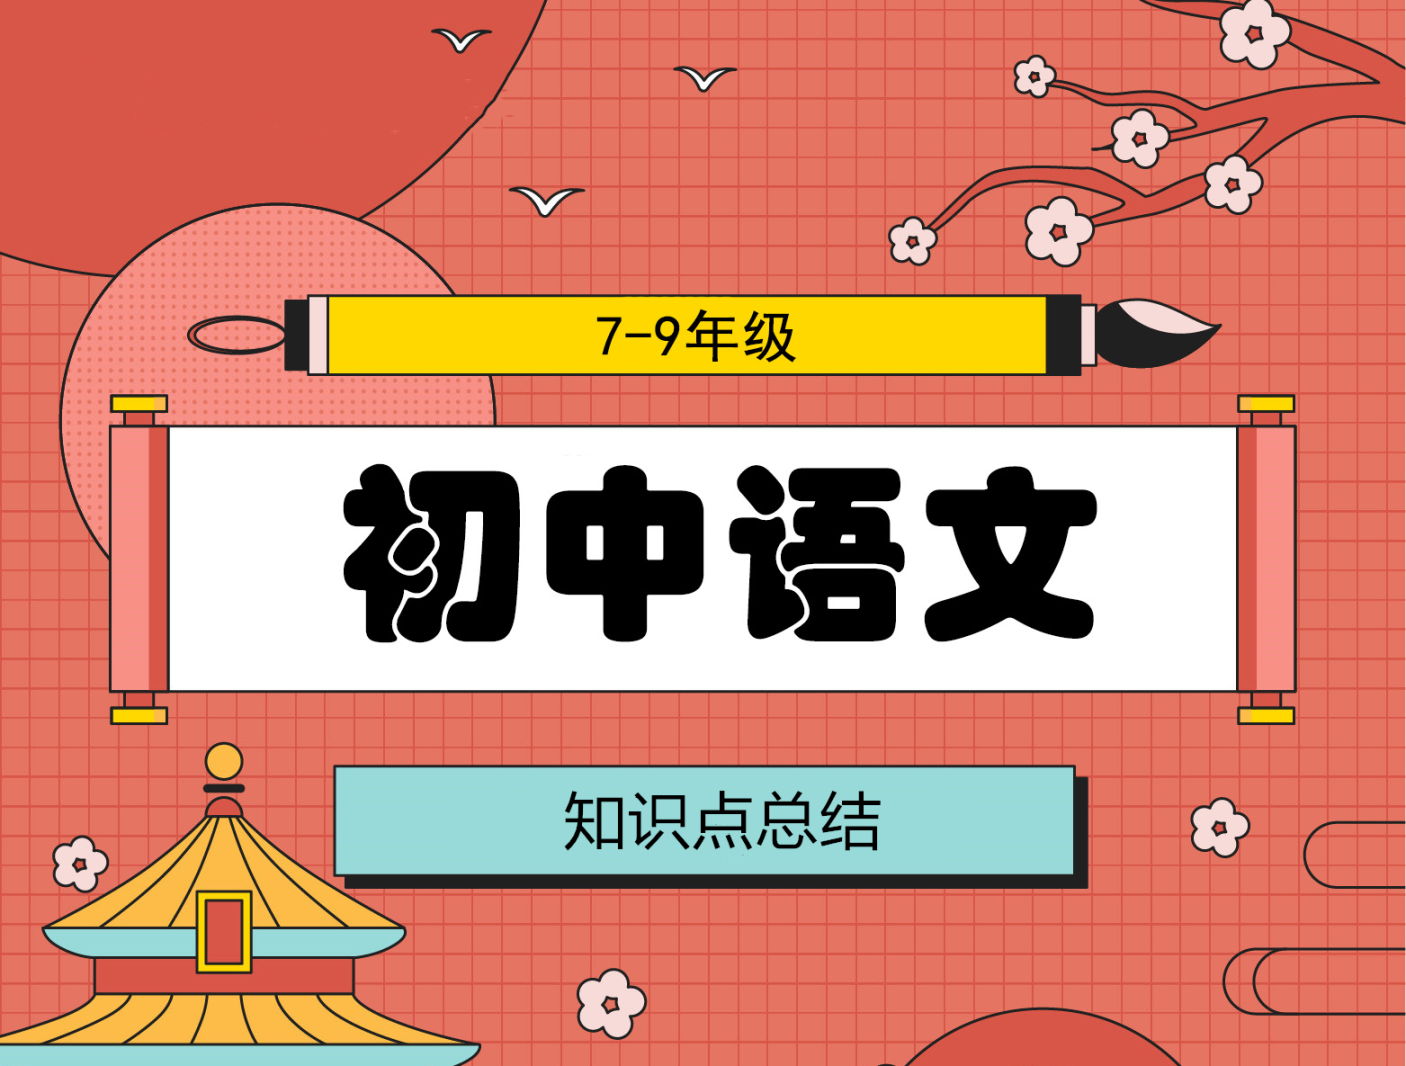 初中语文知识点总结，每日一题，2020.11.19